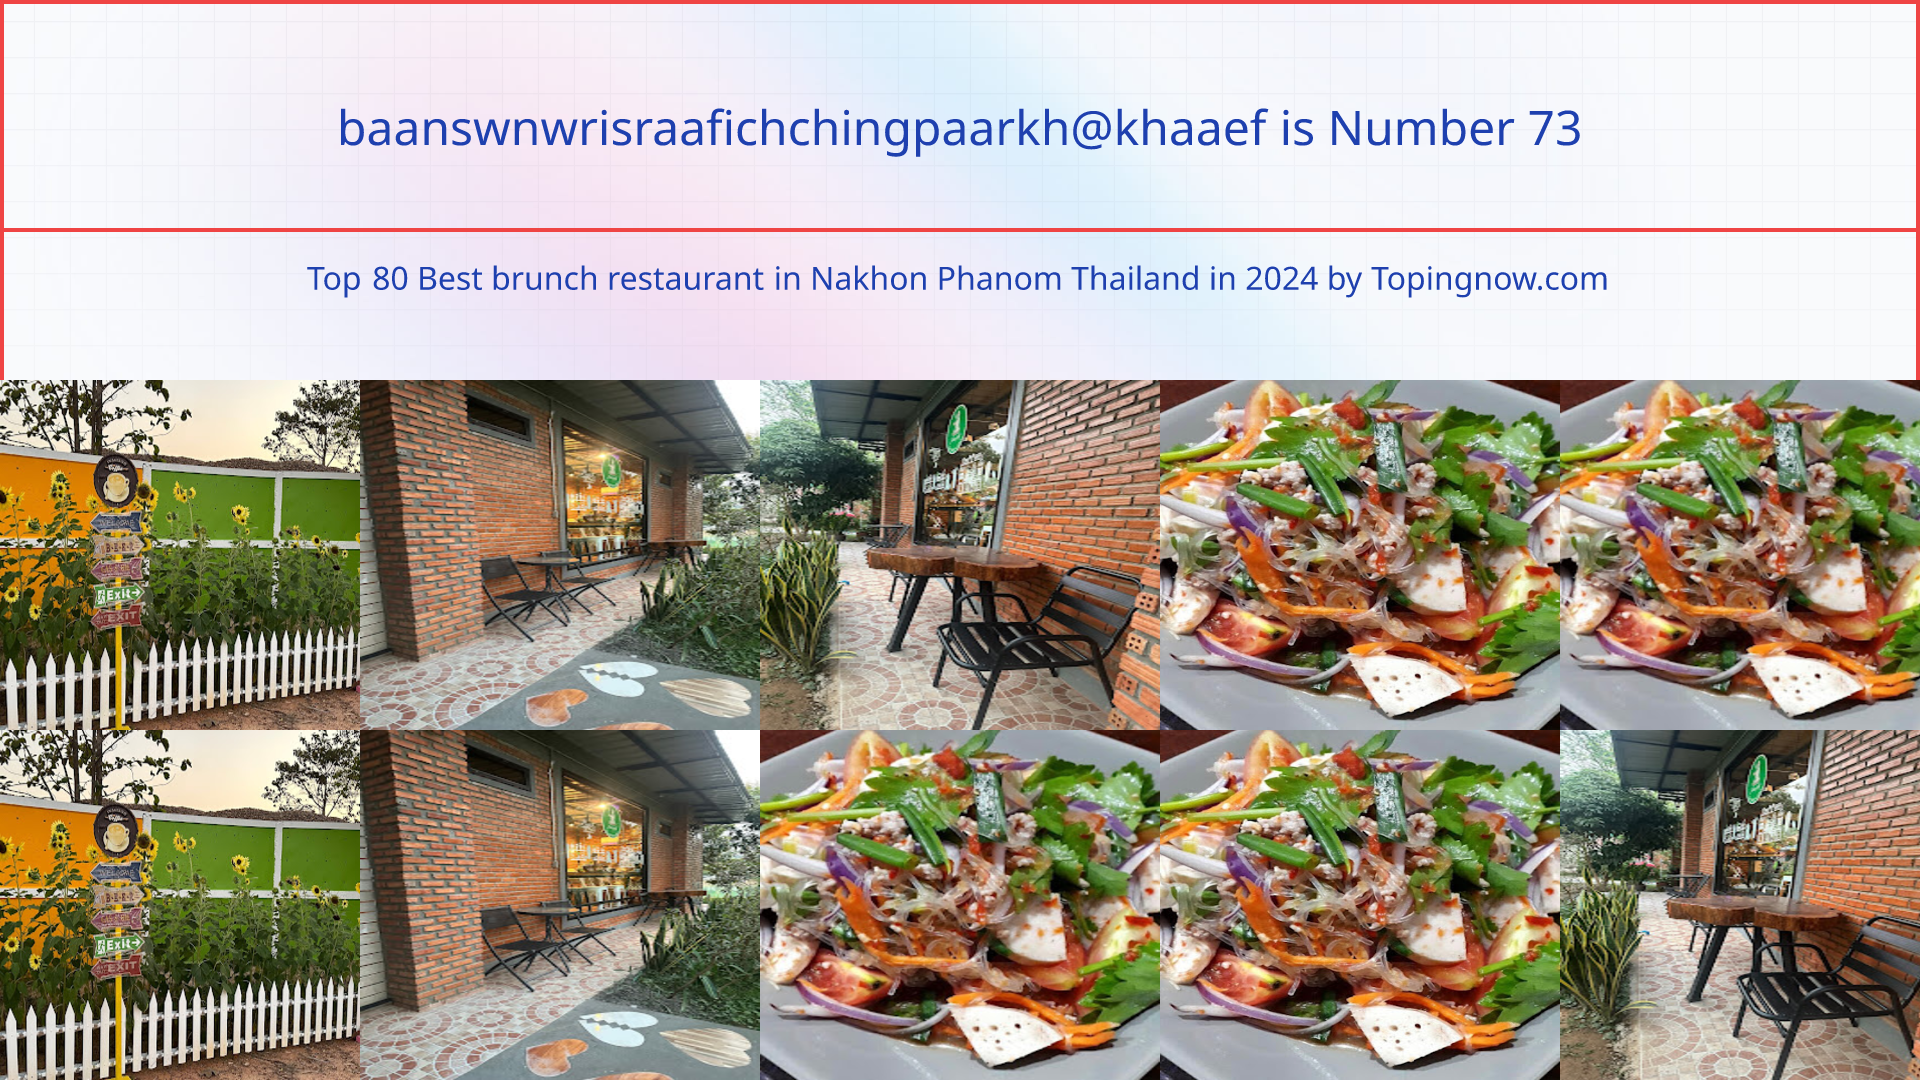 baanswnwrisraafichchingpaarkh@khaaef: Top 80 Best brunch restaurant in Nakhon Phanom Thailand in 2024